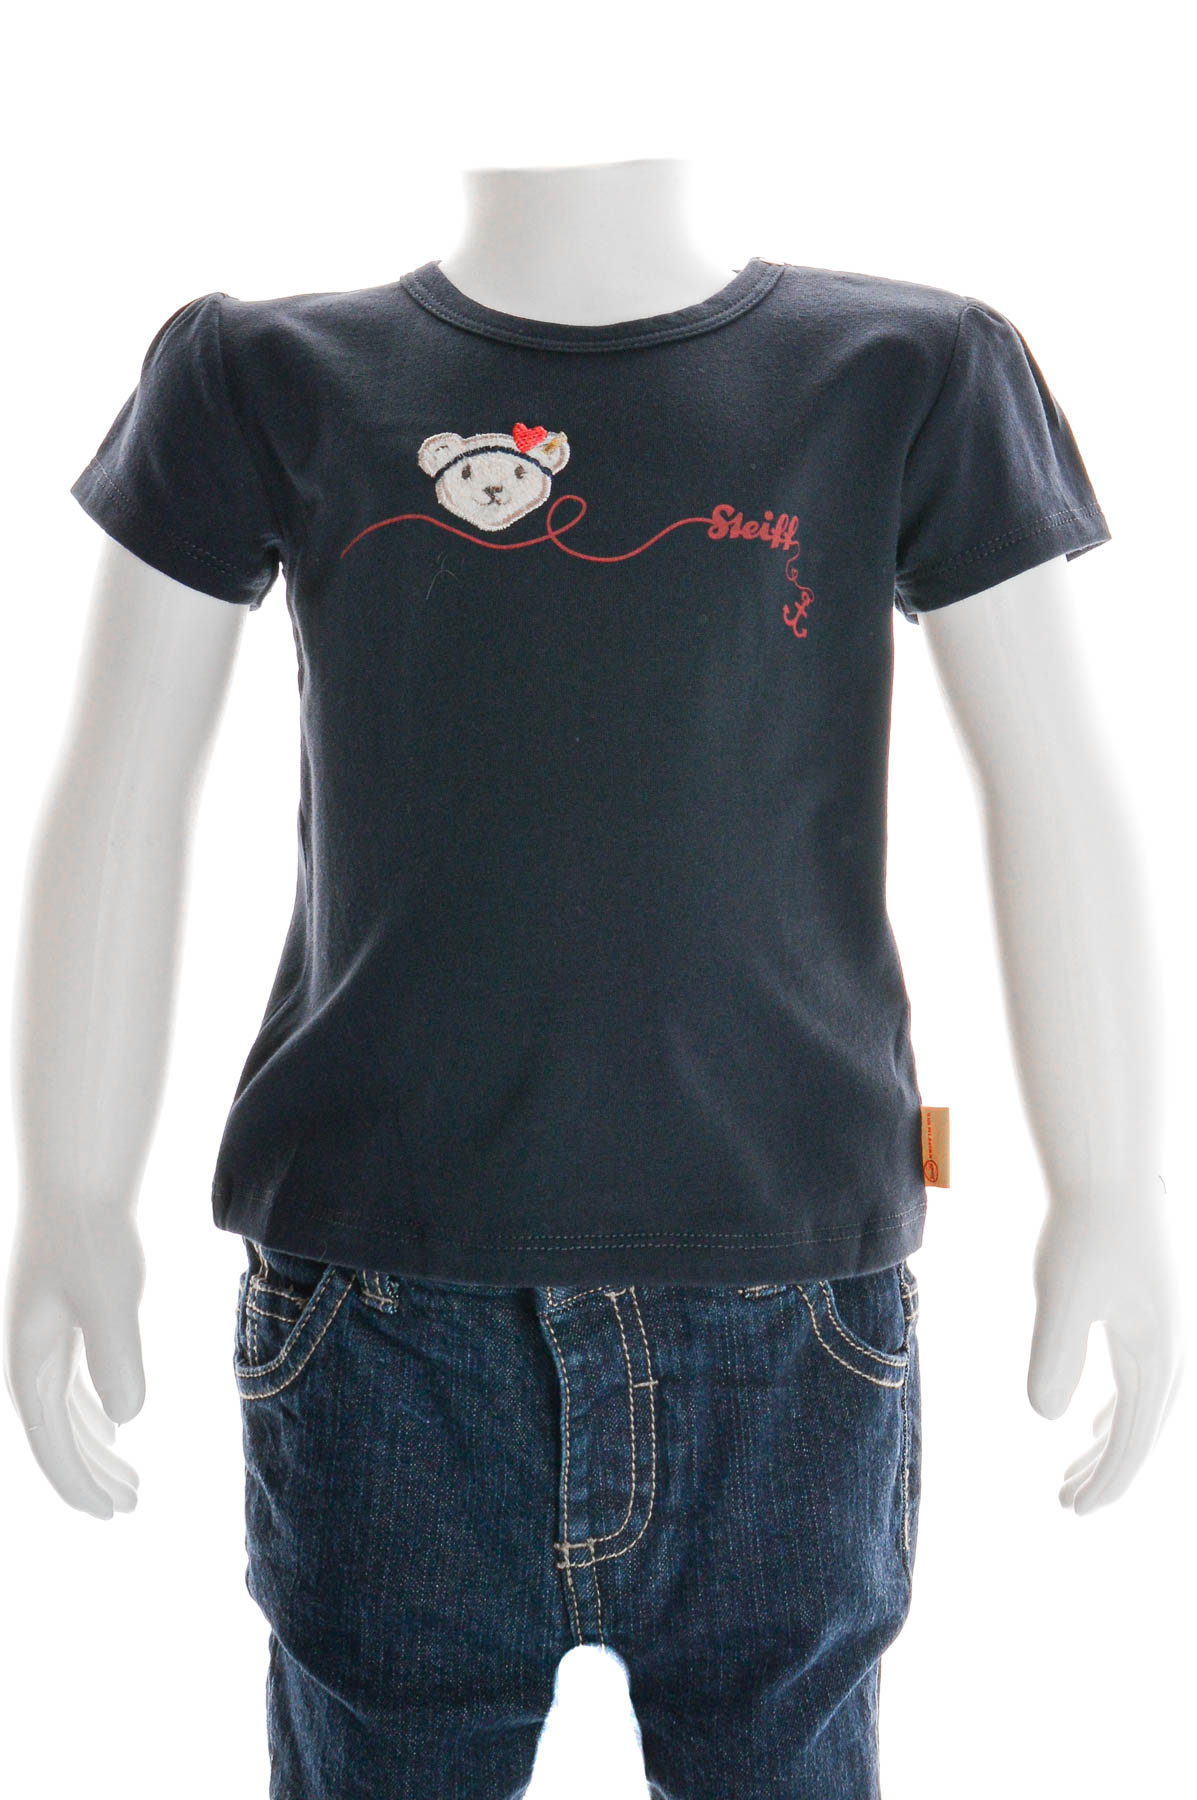 Βρεφικό μπλουζάκι για κορίτσι - Steiff - 0